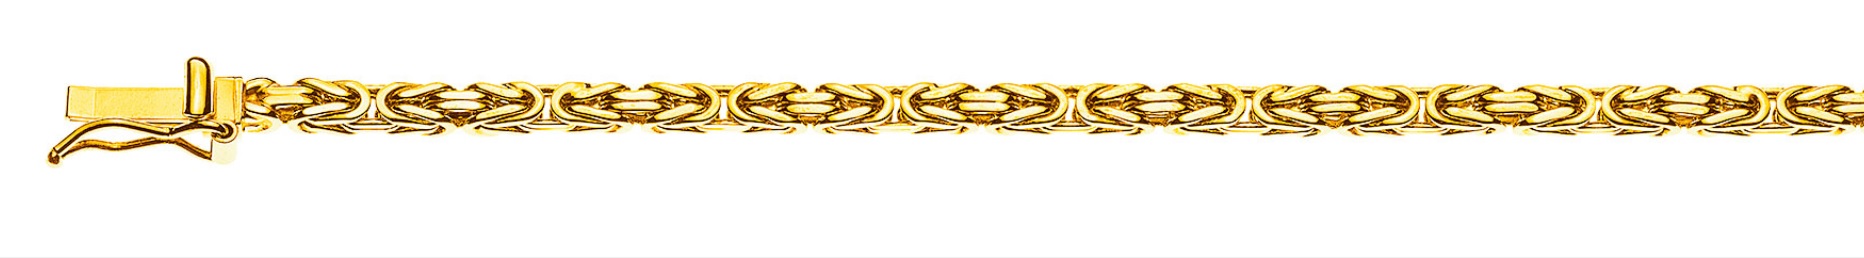 AURONOS Prestige Collier en or jaune 18K chaîne royale 50cm 2.5mm